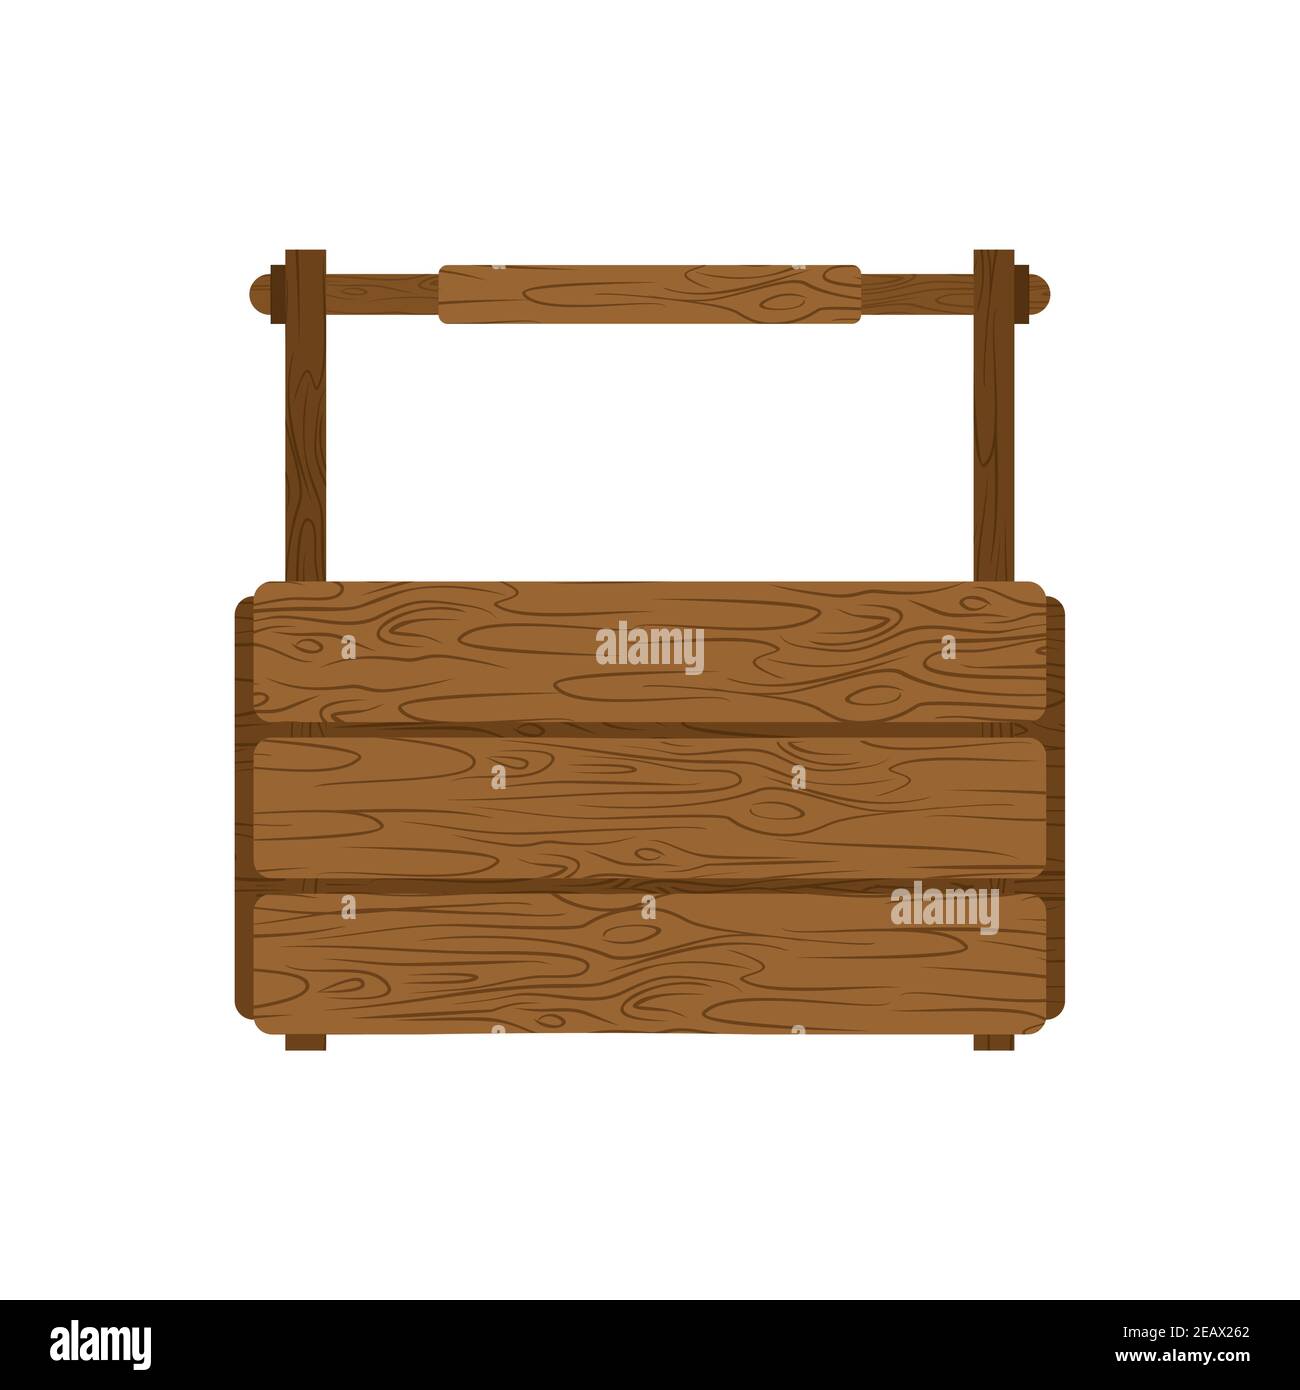 https://c8.alamy.com/comp/2EAX262/empty-toolbox-wooden-tool-box-vector-illustration-2EAX262.jpg